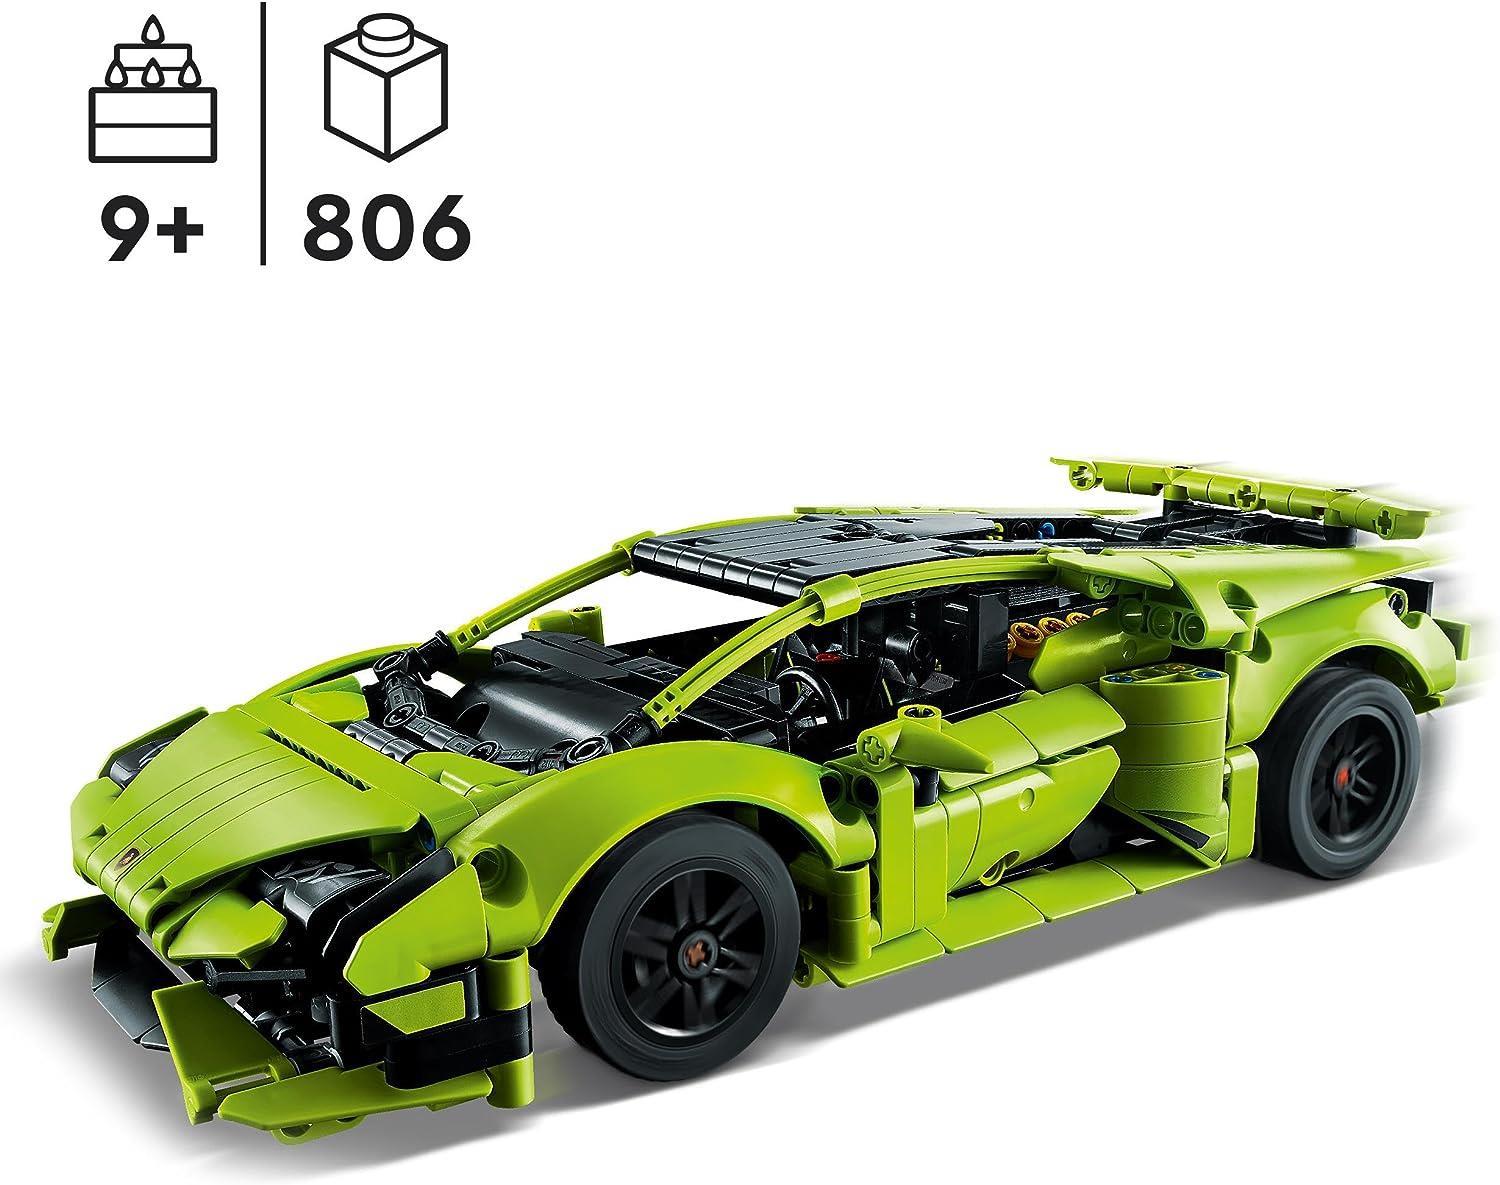 Lego Technic Lamborghini Huracan 42161